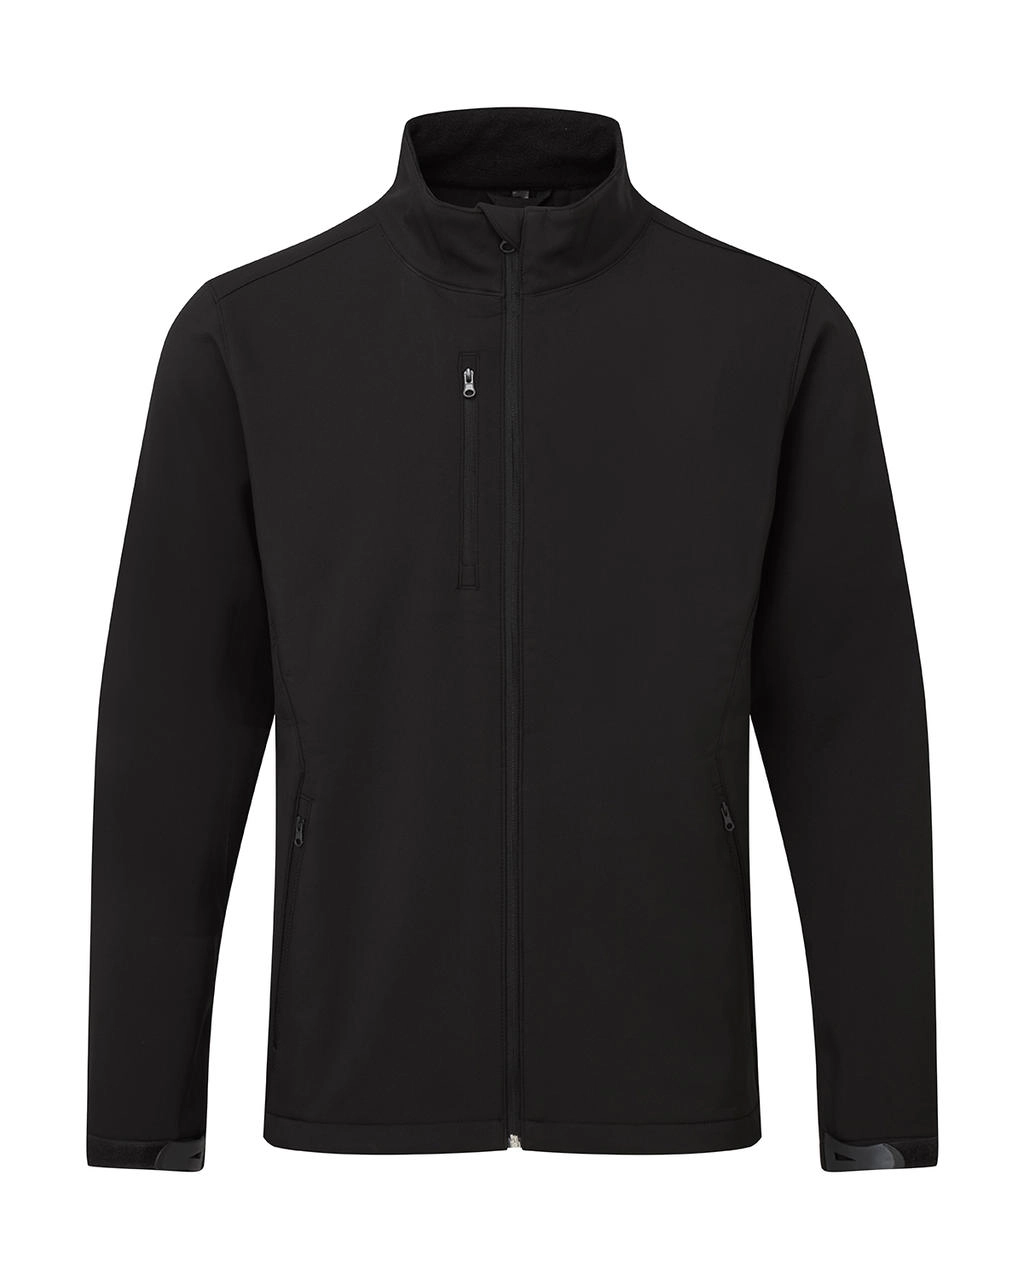 Signature Tagless Softshell Jacket Men zum Besticken und Bedrucken in der Farbe Black mit Ihren Logo, Schriftzug oder Motiv.